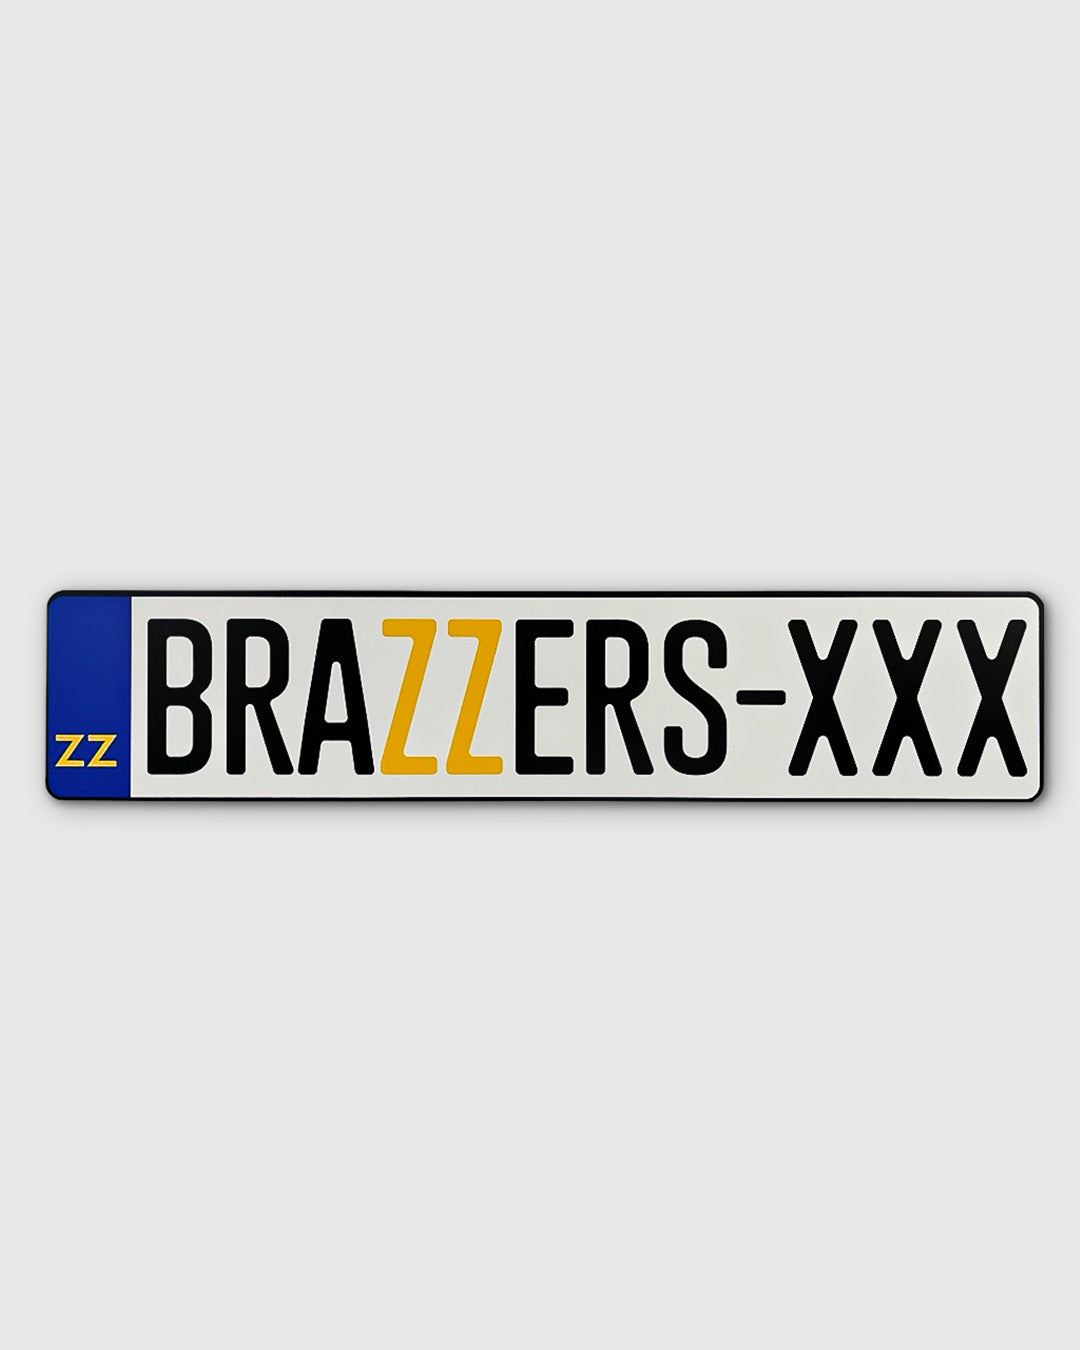 brazzers-license-plate_euro